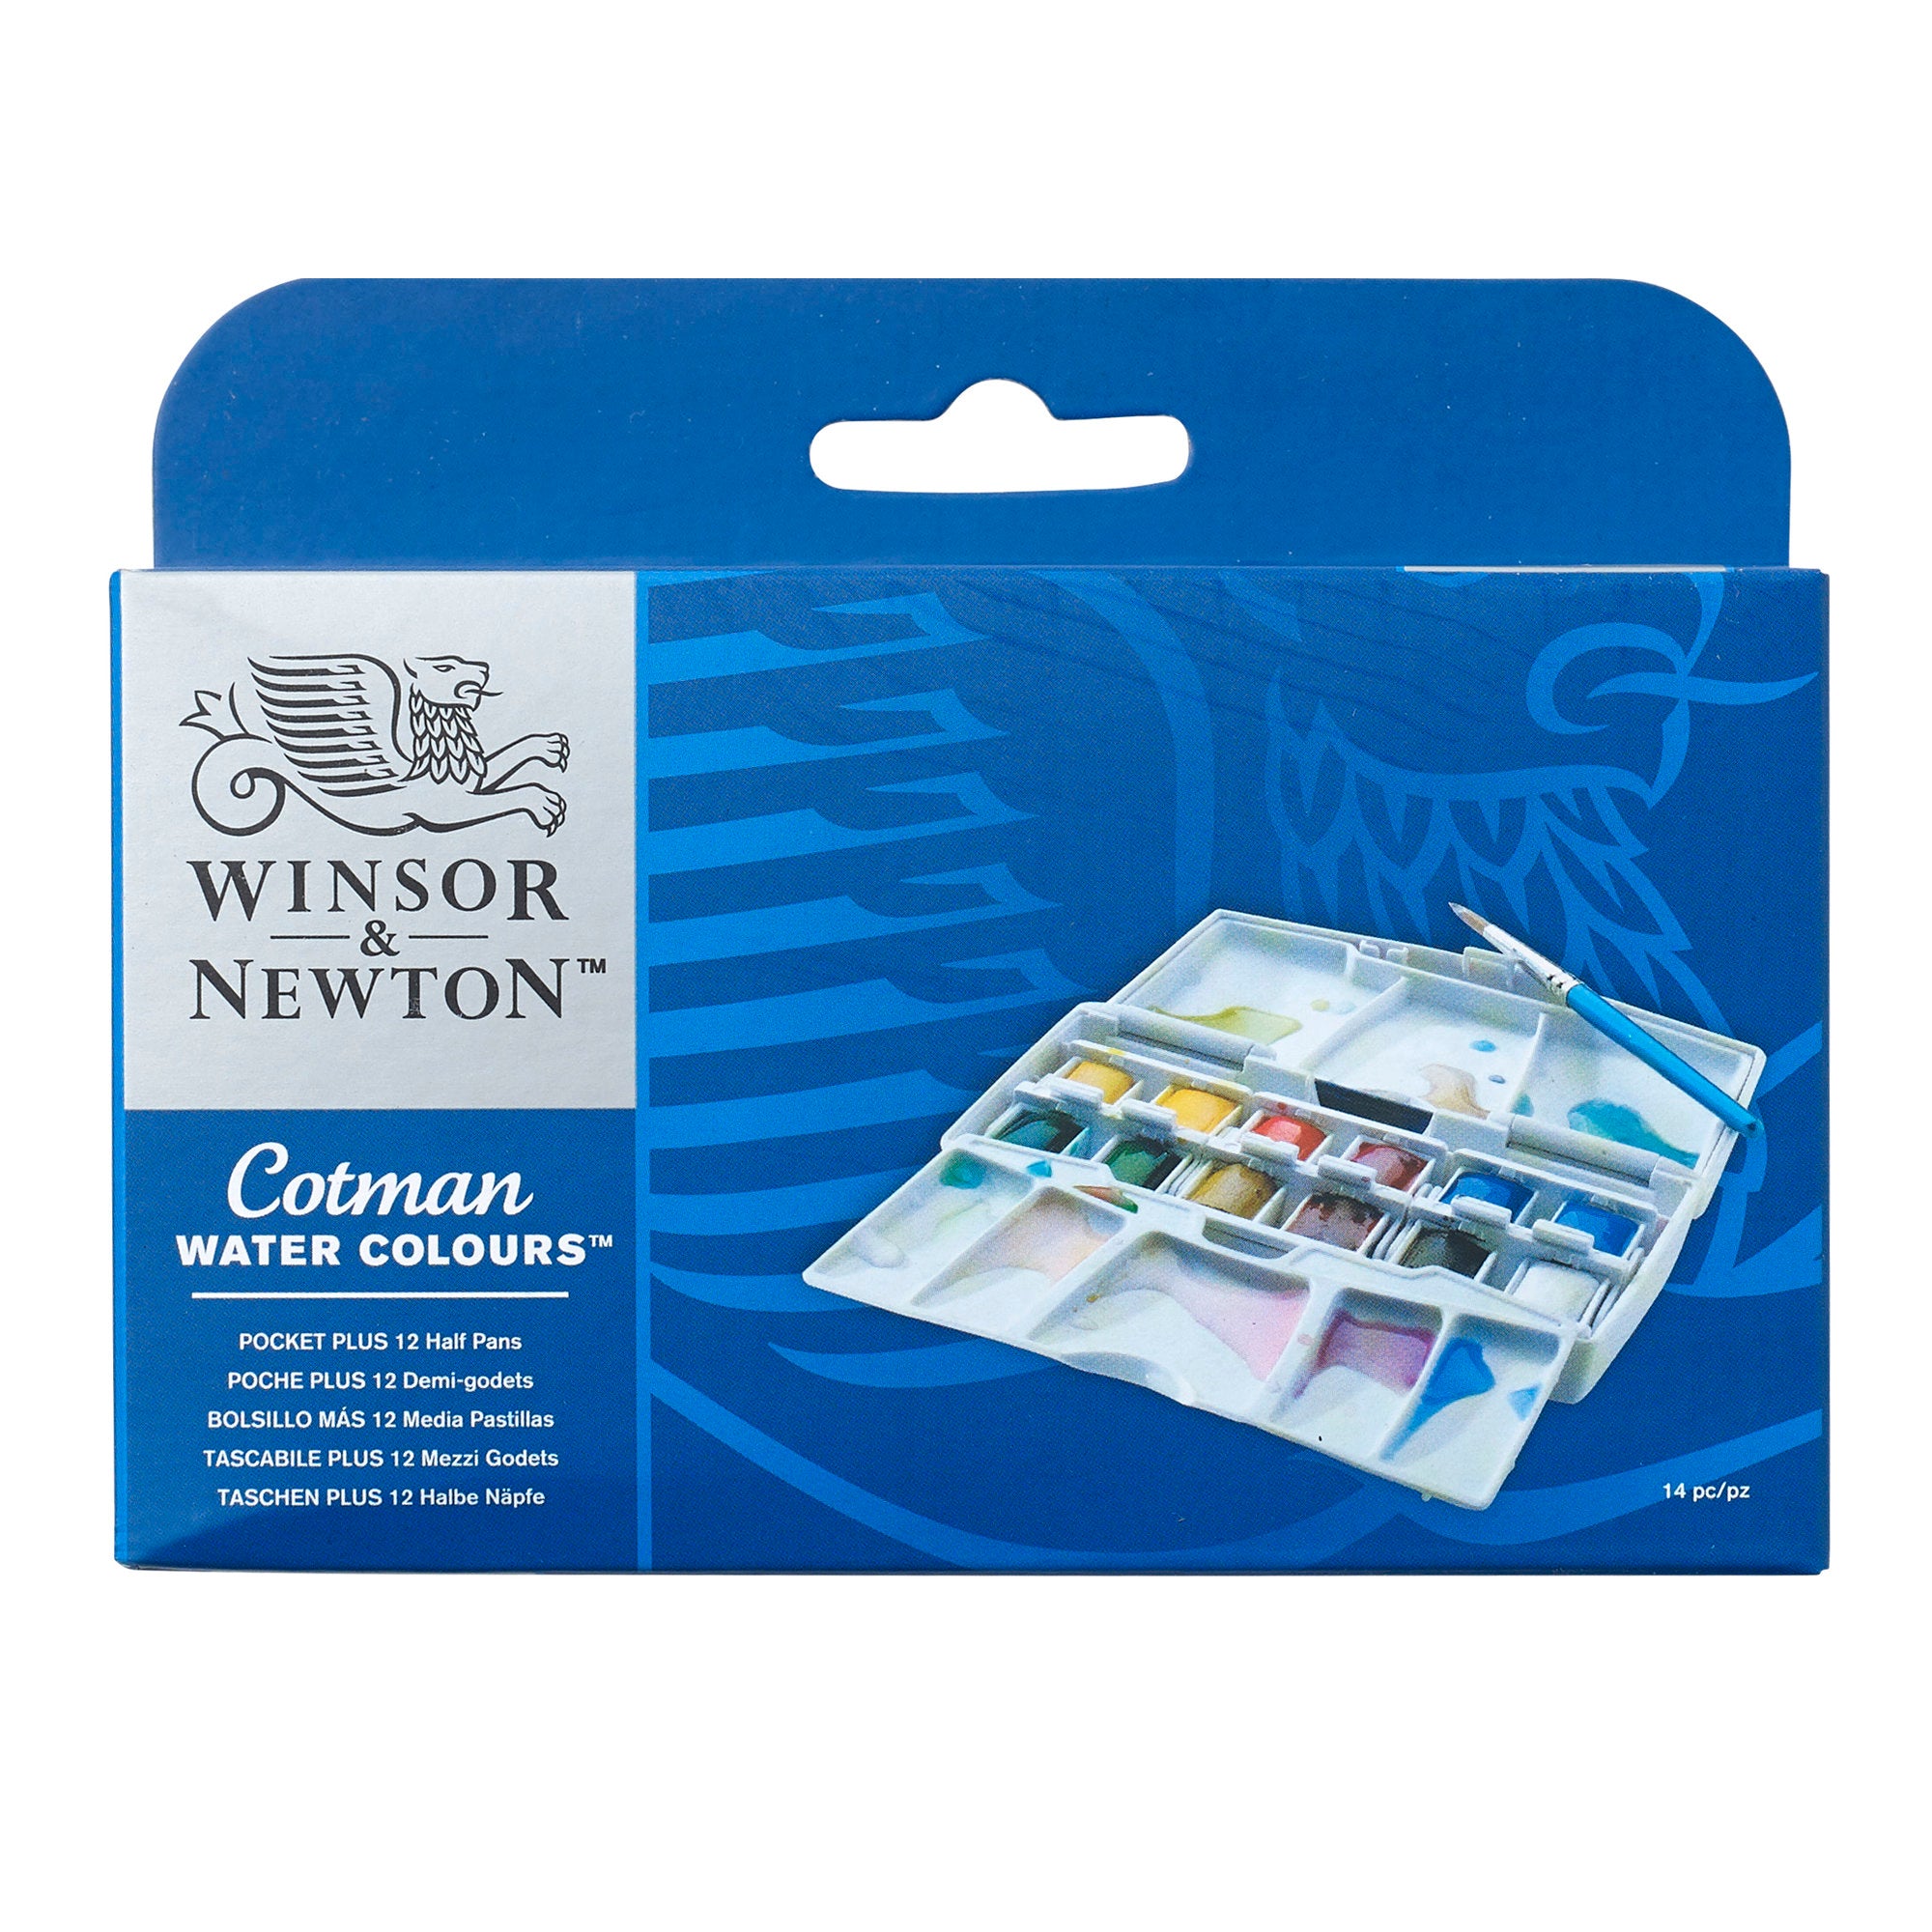 Winsor & Newton Cotman Pocket PLUS Watercolour Set